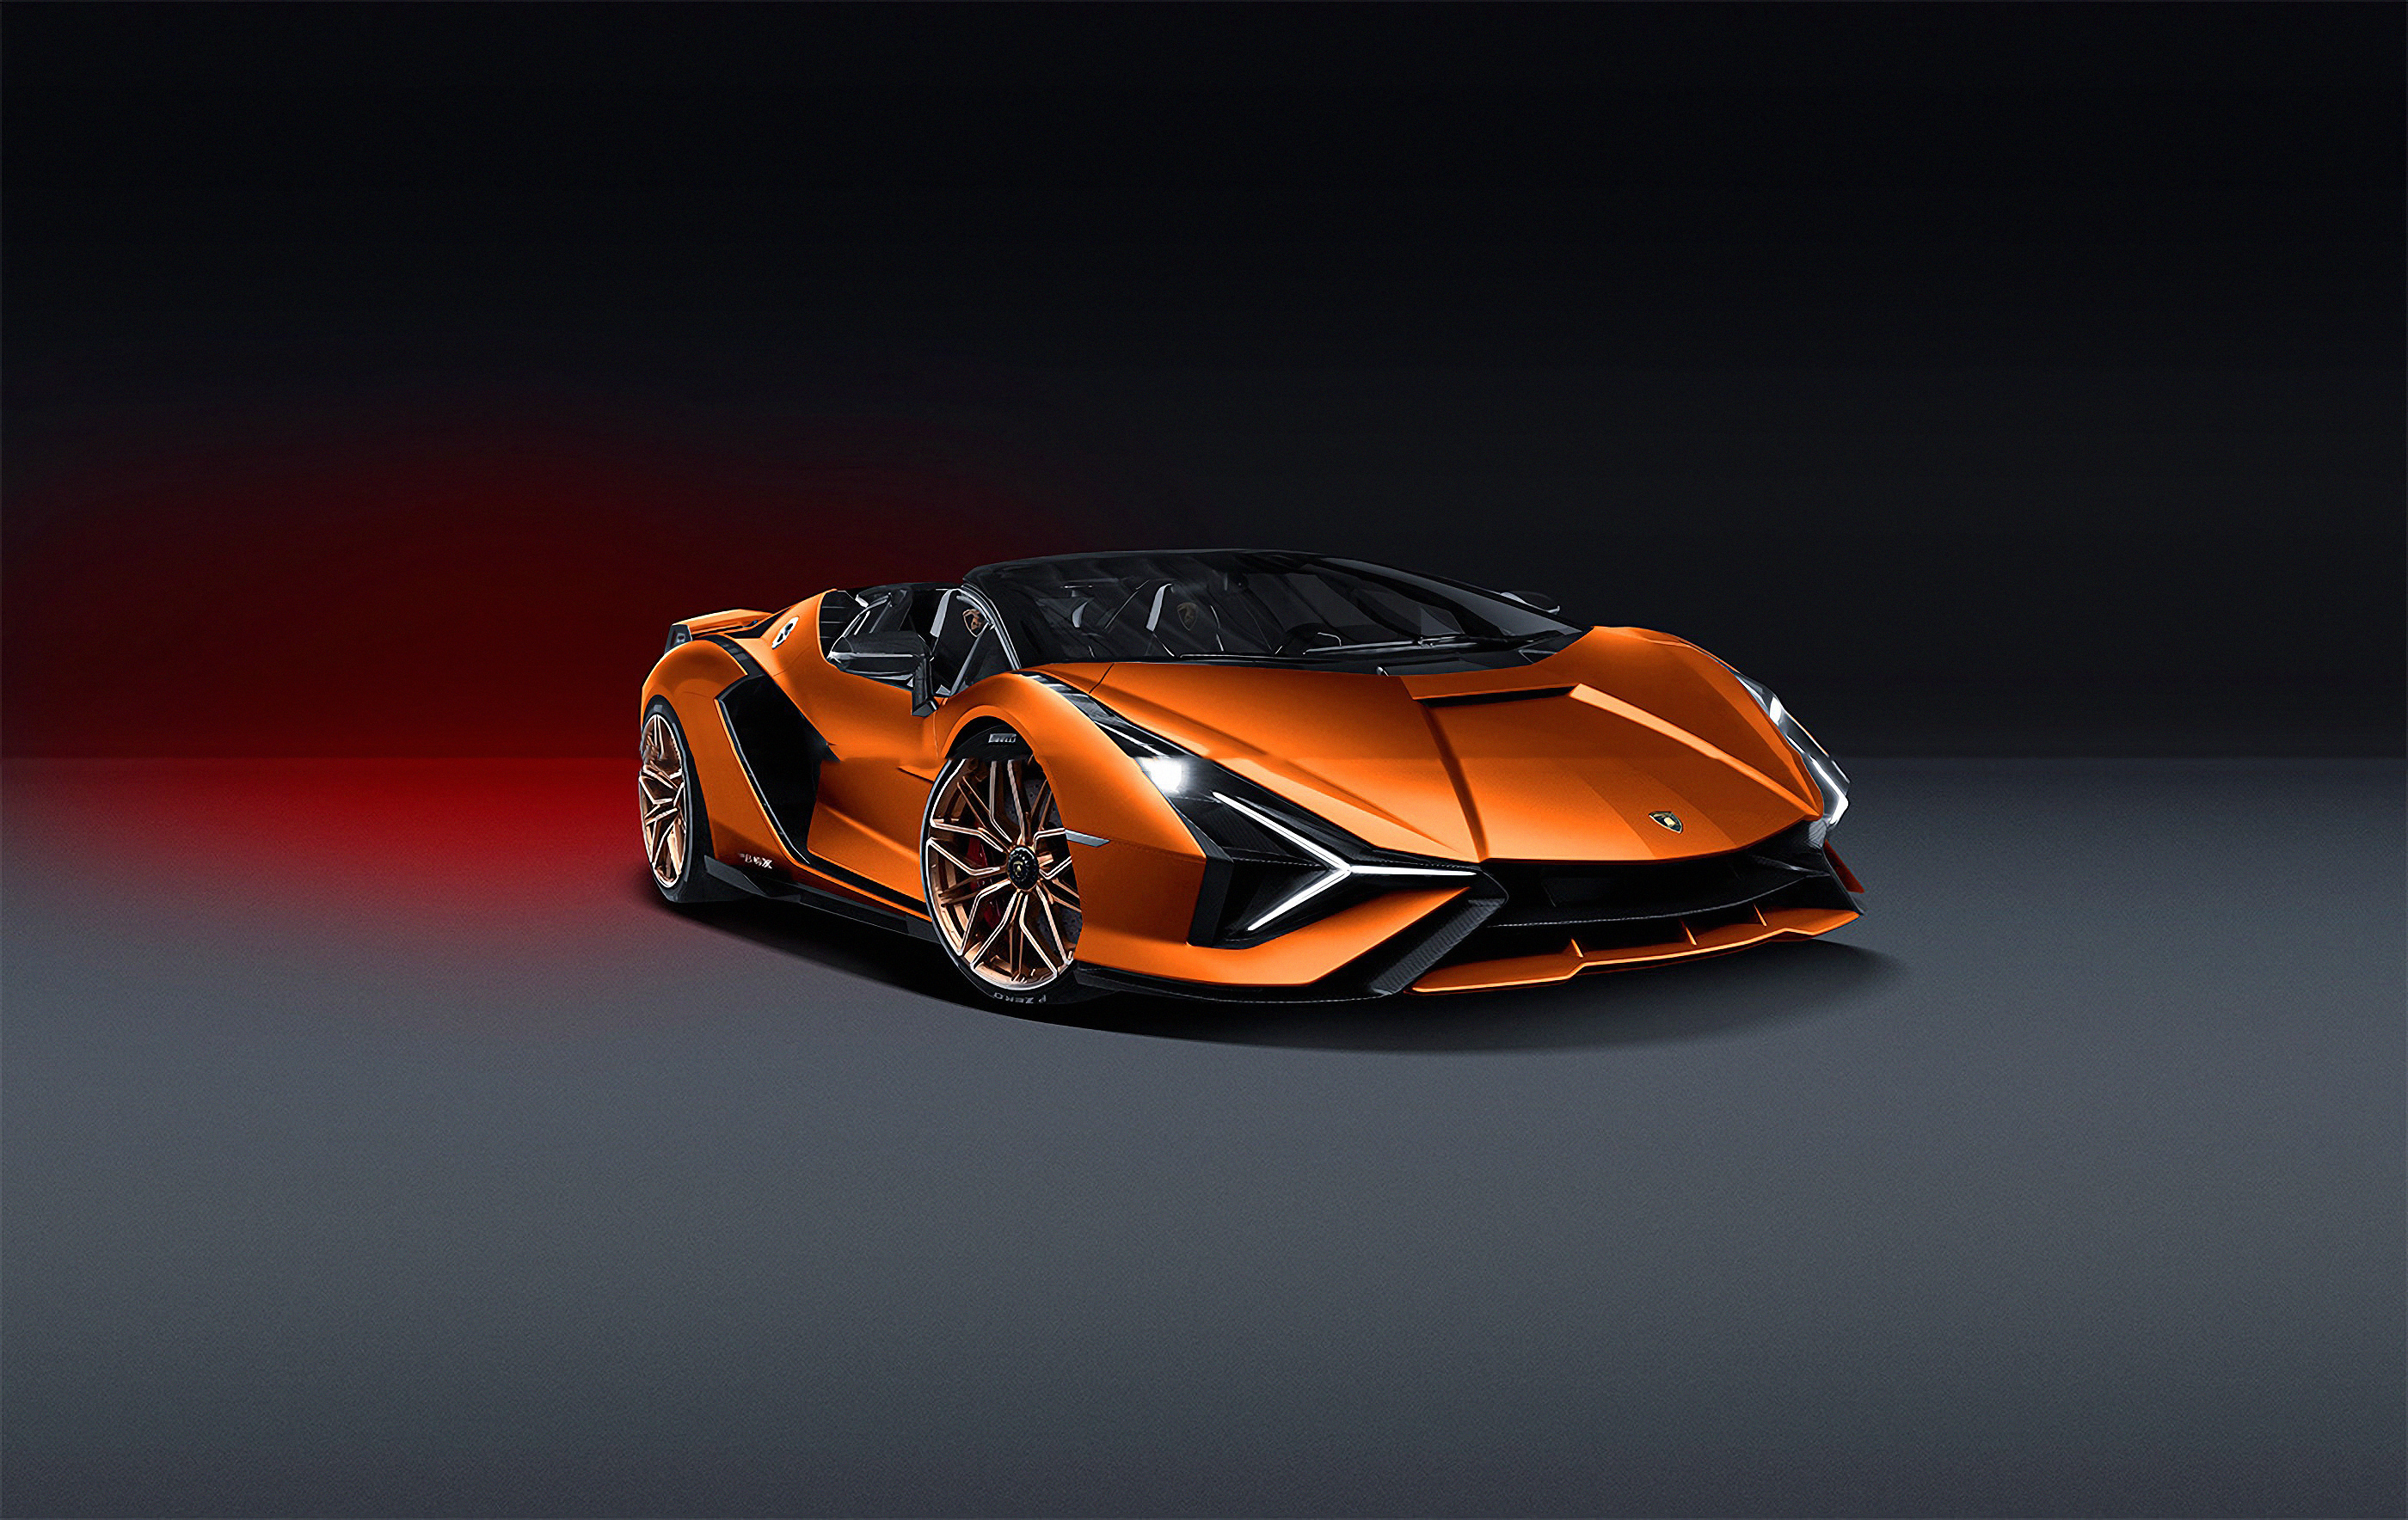 Lamborghini Sian 2019 Front View 4k, HD Cars, 4k Wallpapers, Images